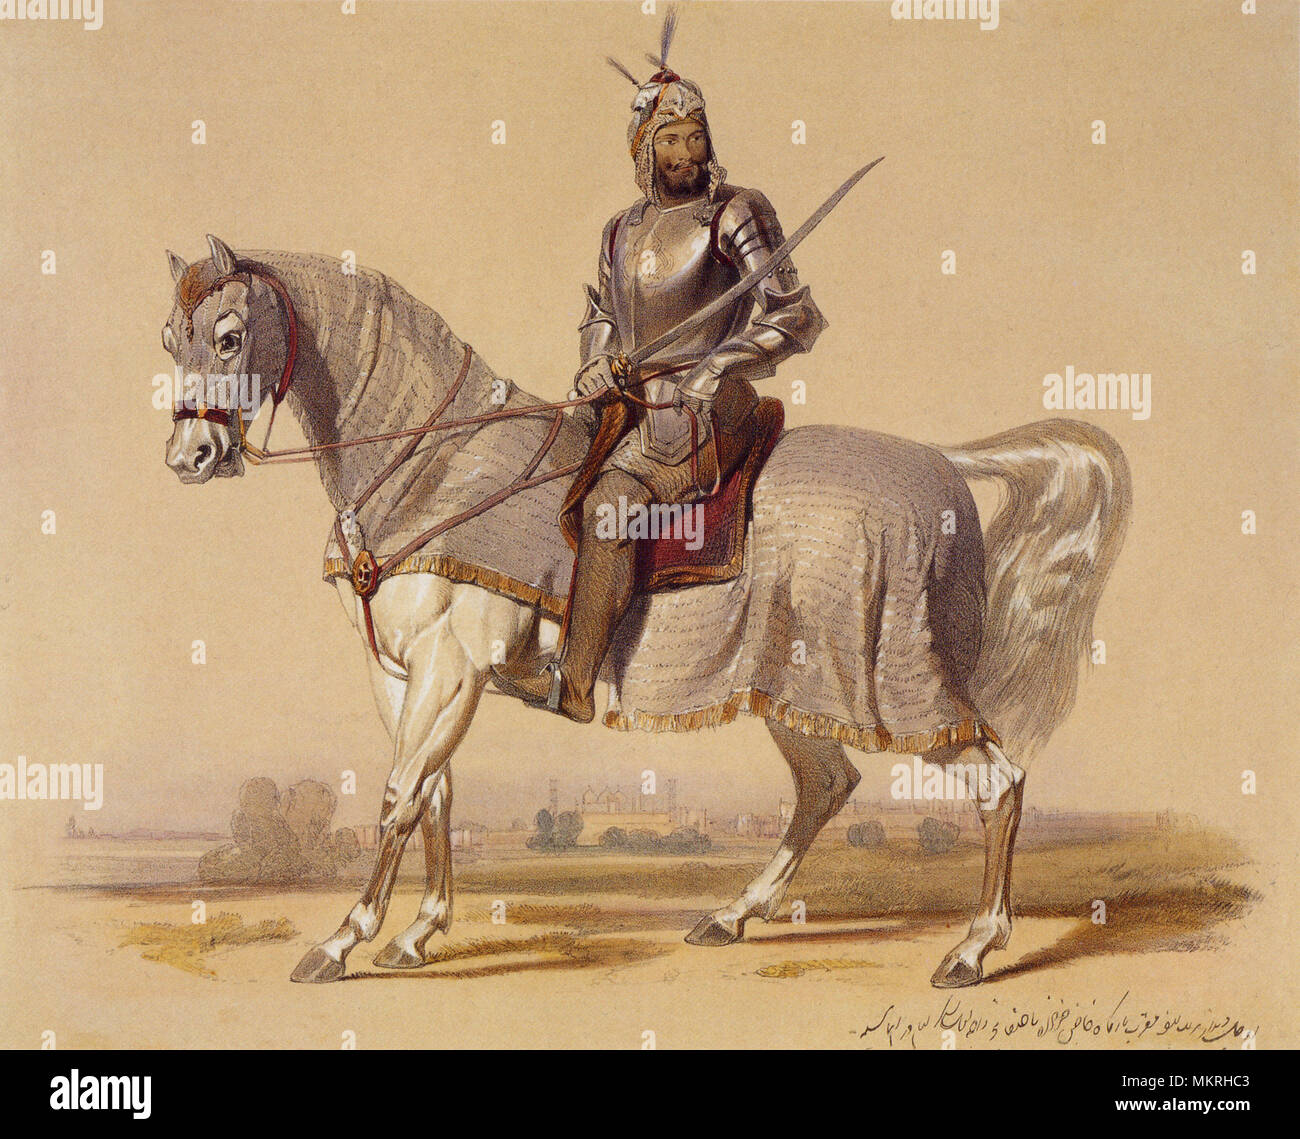 Sikh Krieger auf Pferd, Indien 1847 Stockfoto